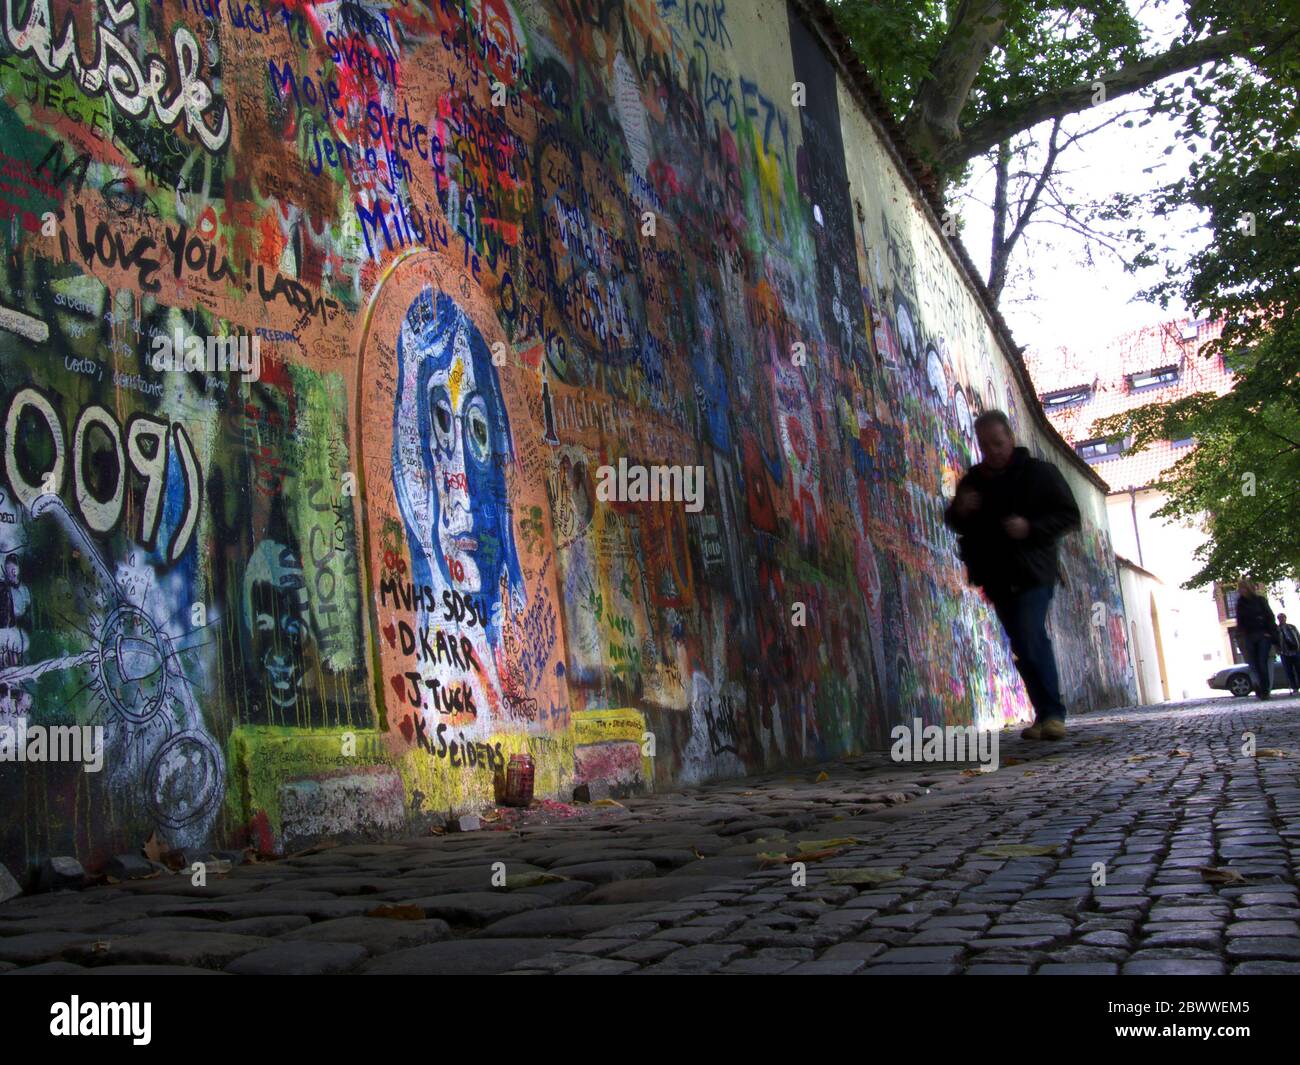 El Muro de Lennon o el Muro de John Lennon en Praga - Praha, República Checa. Graffiti inspirado por John Lennon y los Beatles ha sido pintado aquí desde el th Foto de stock